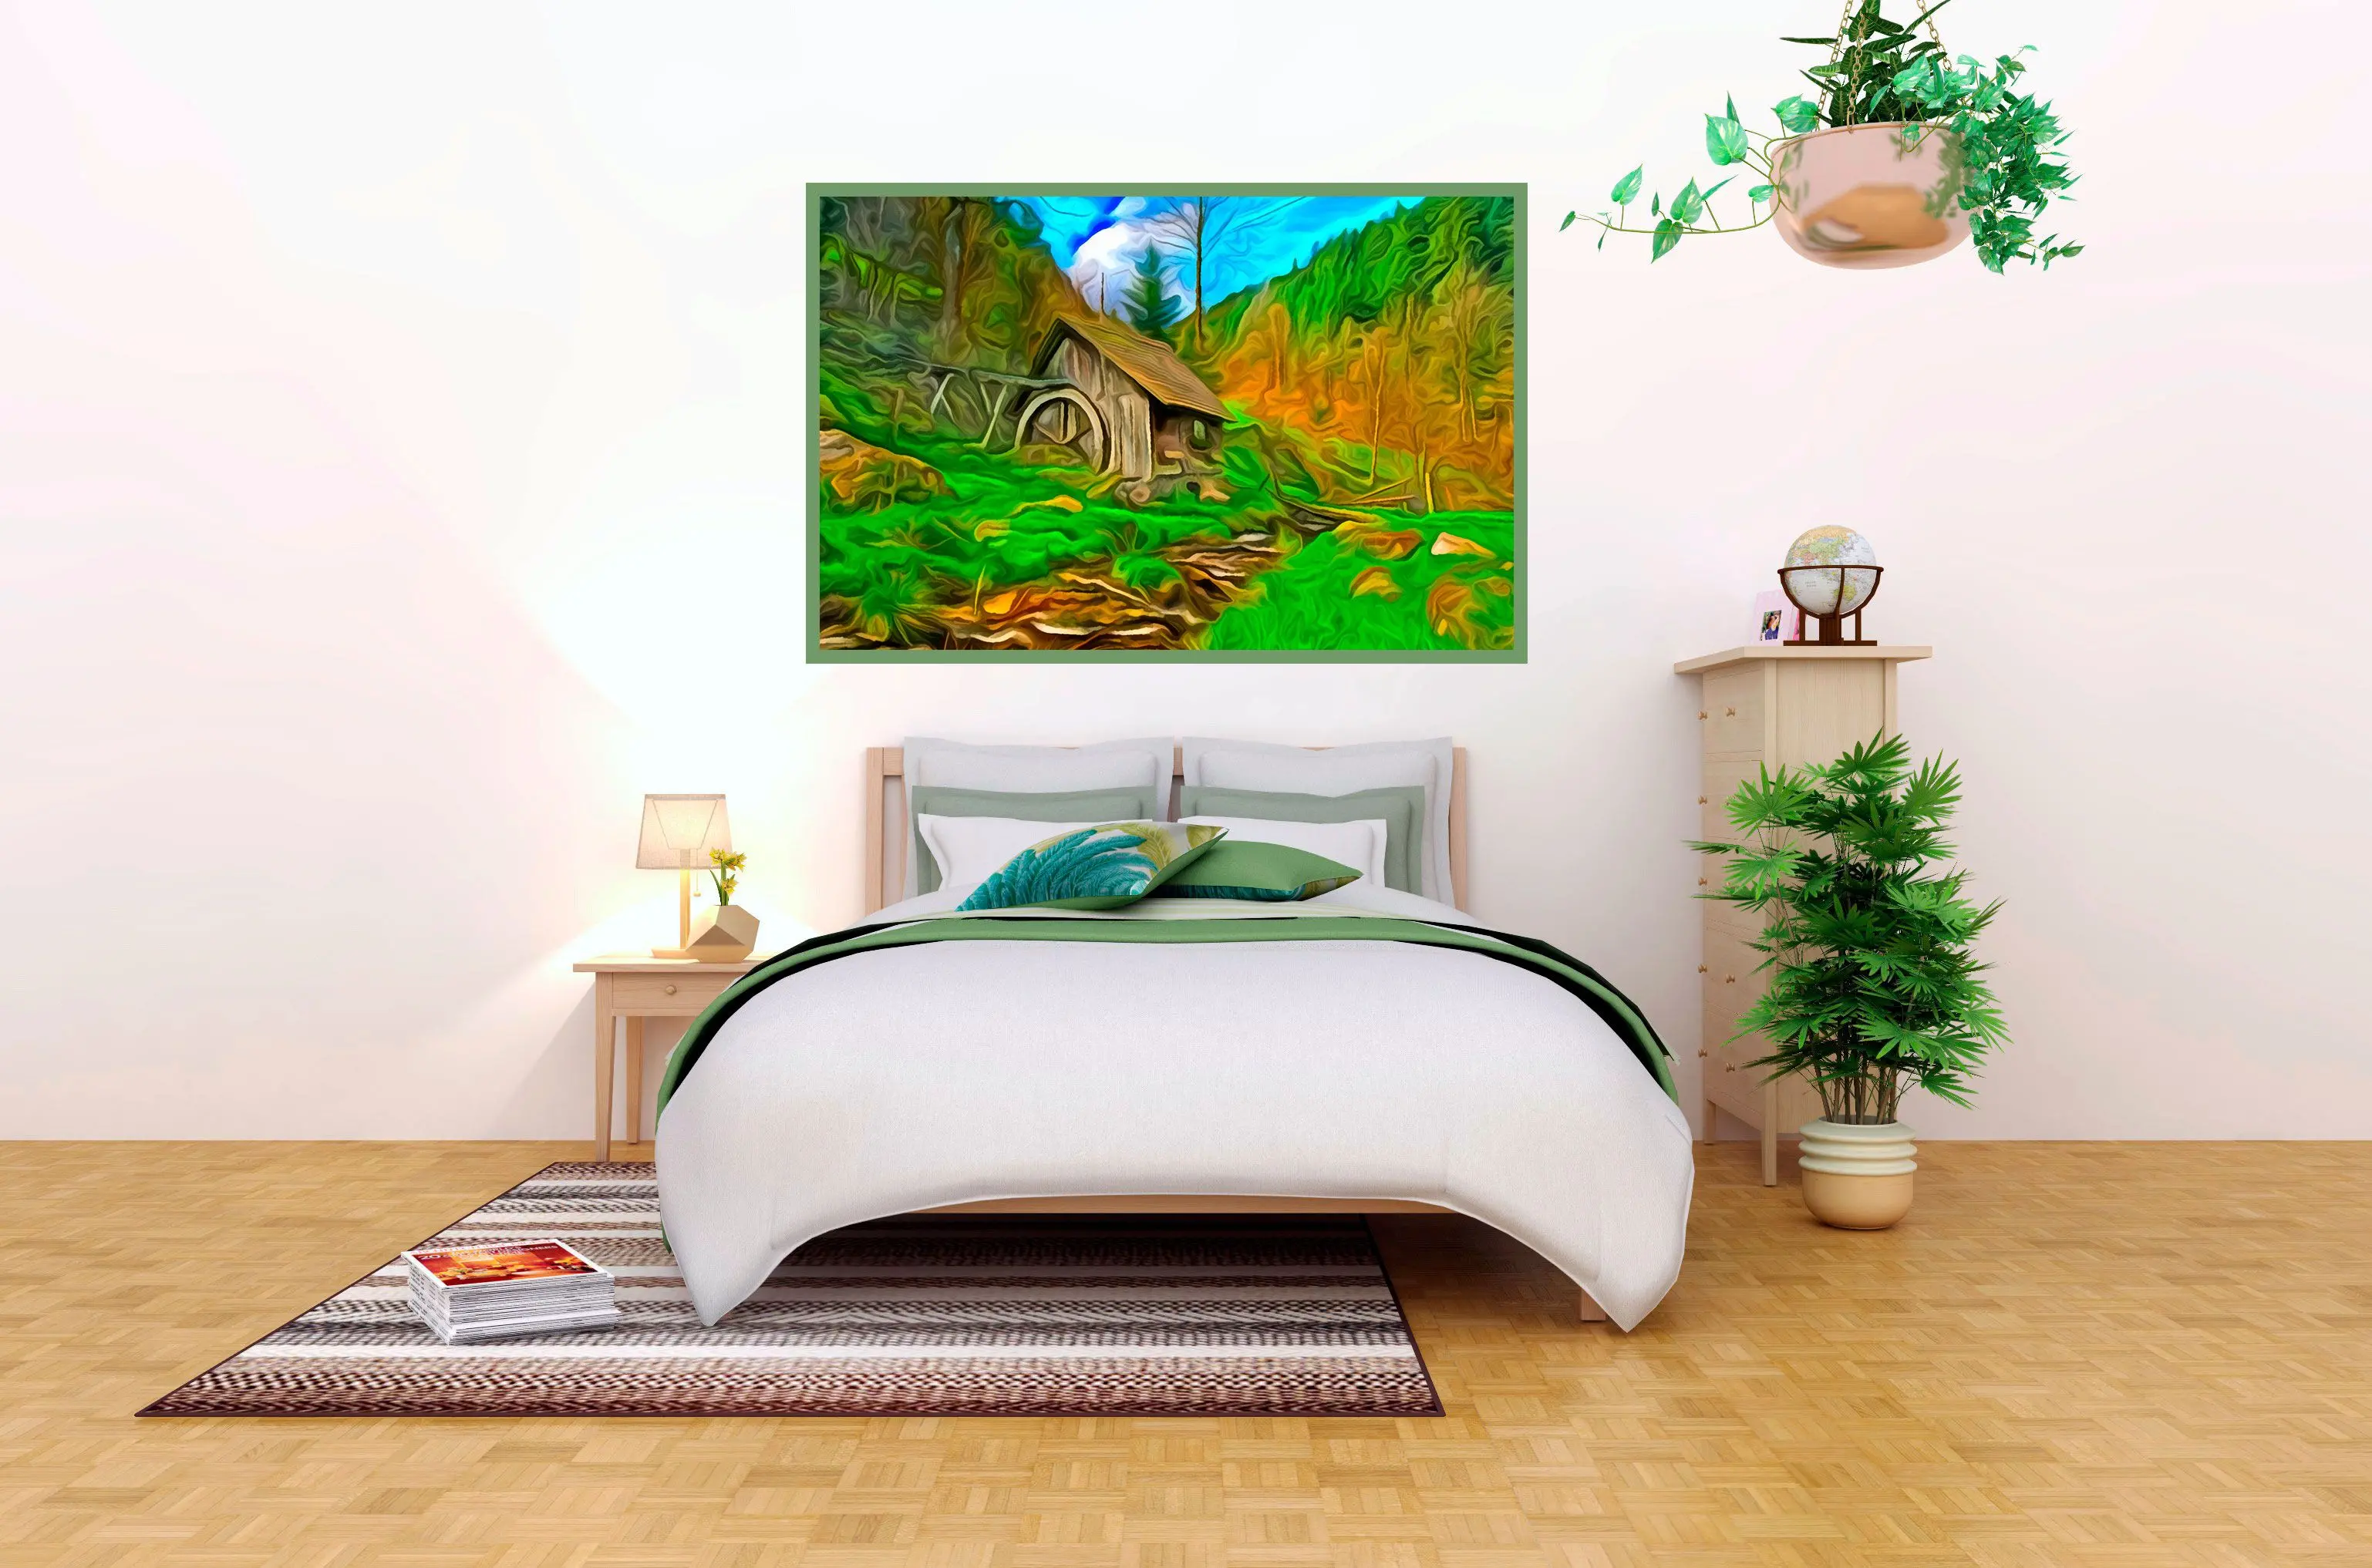 Lag et maleri fra et bilde til ditt hjem.